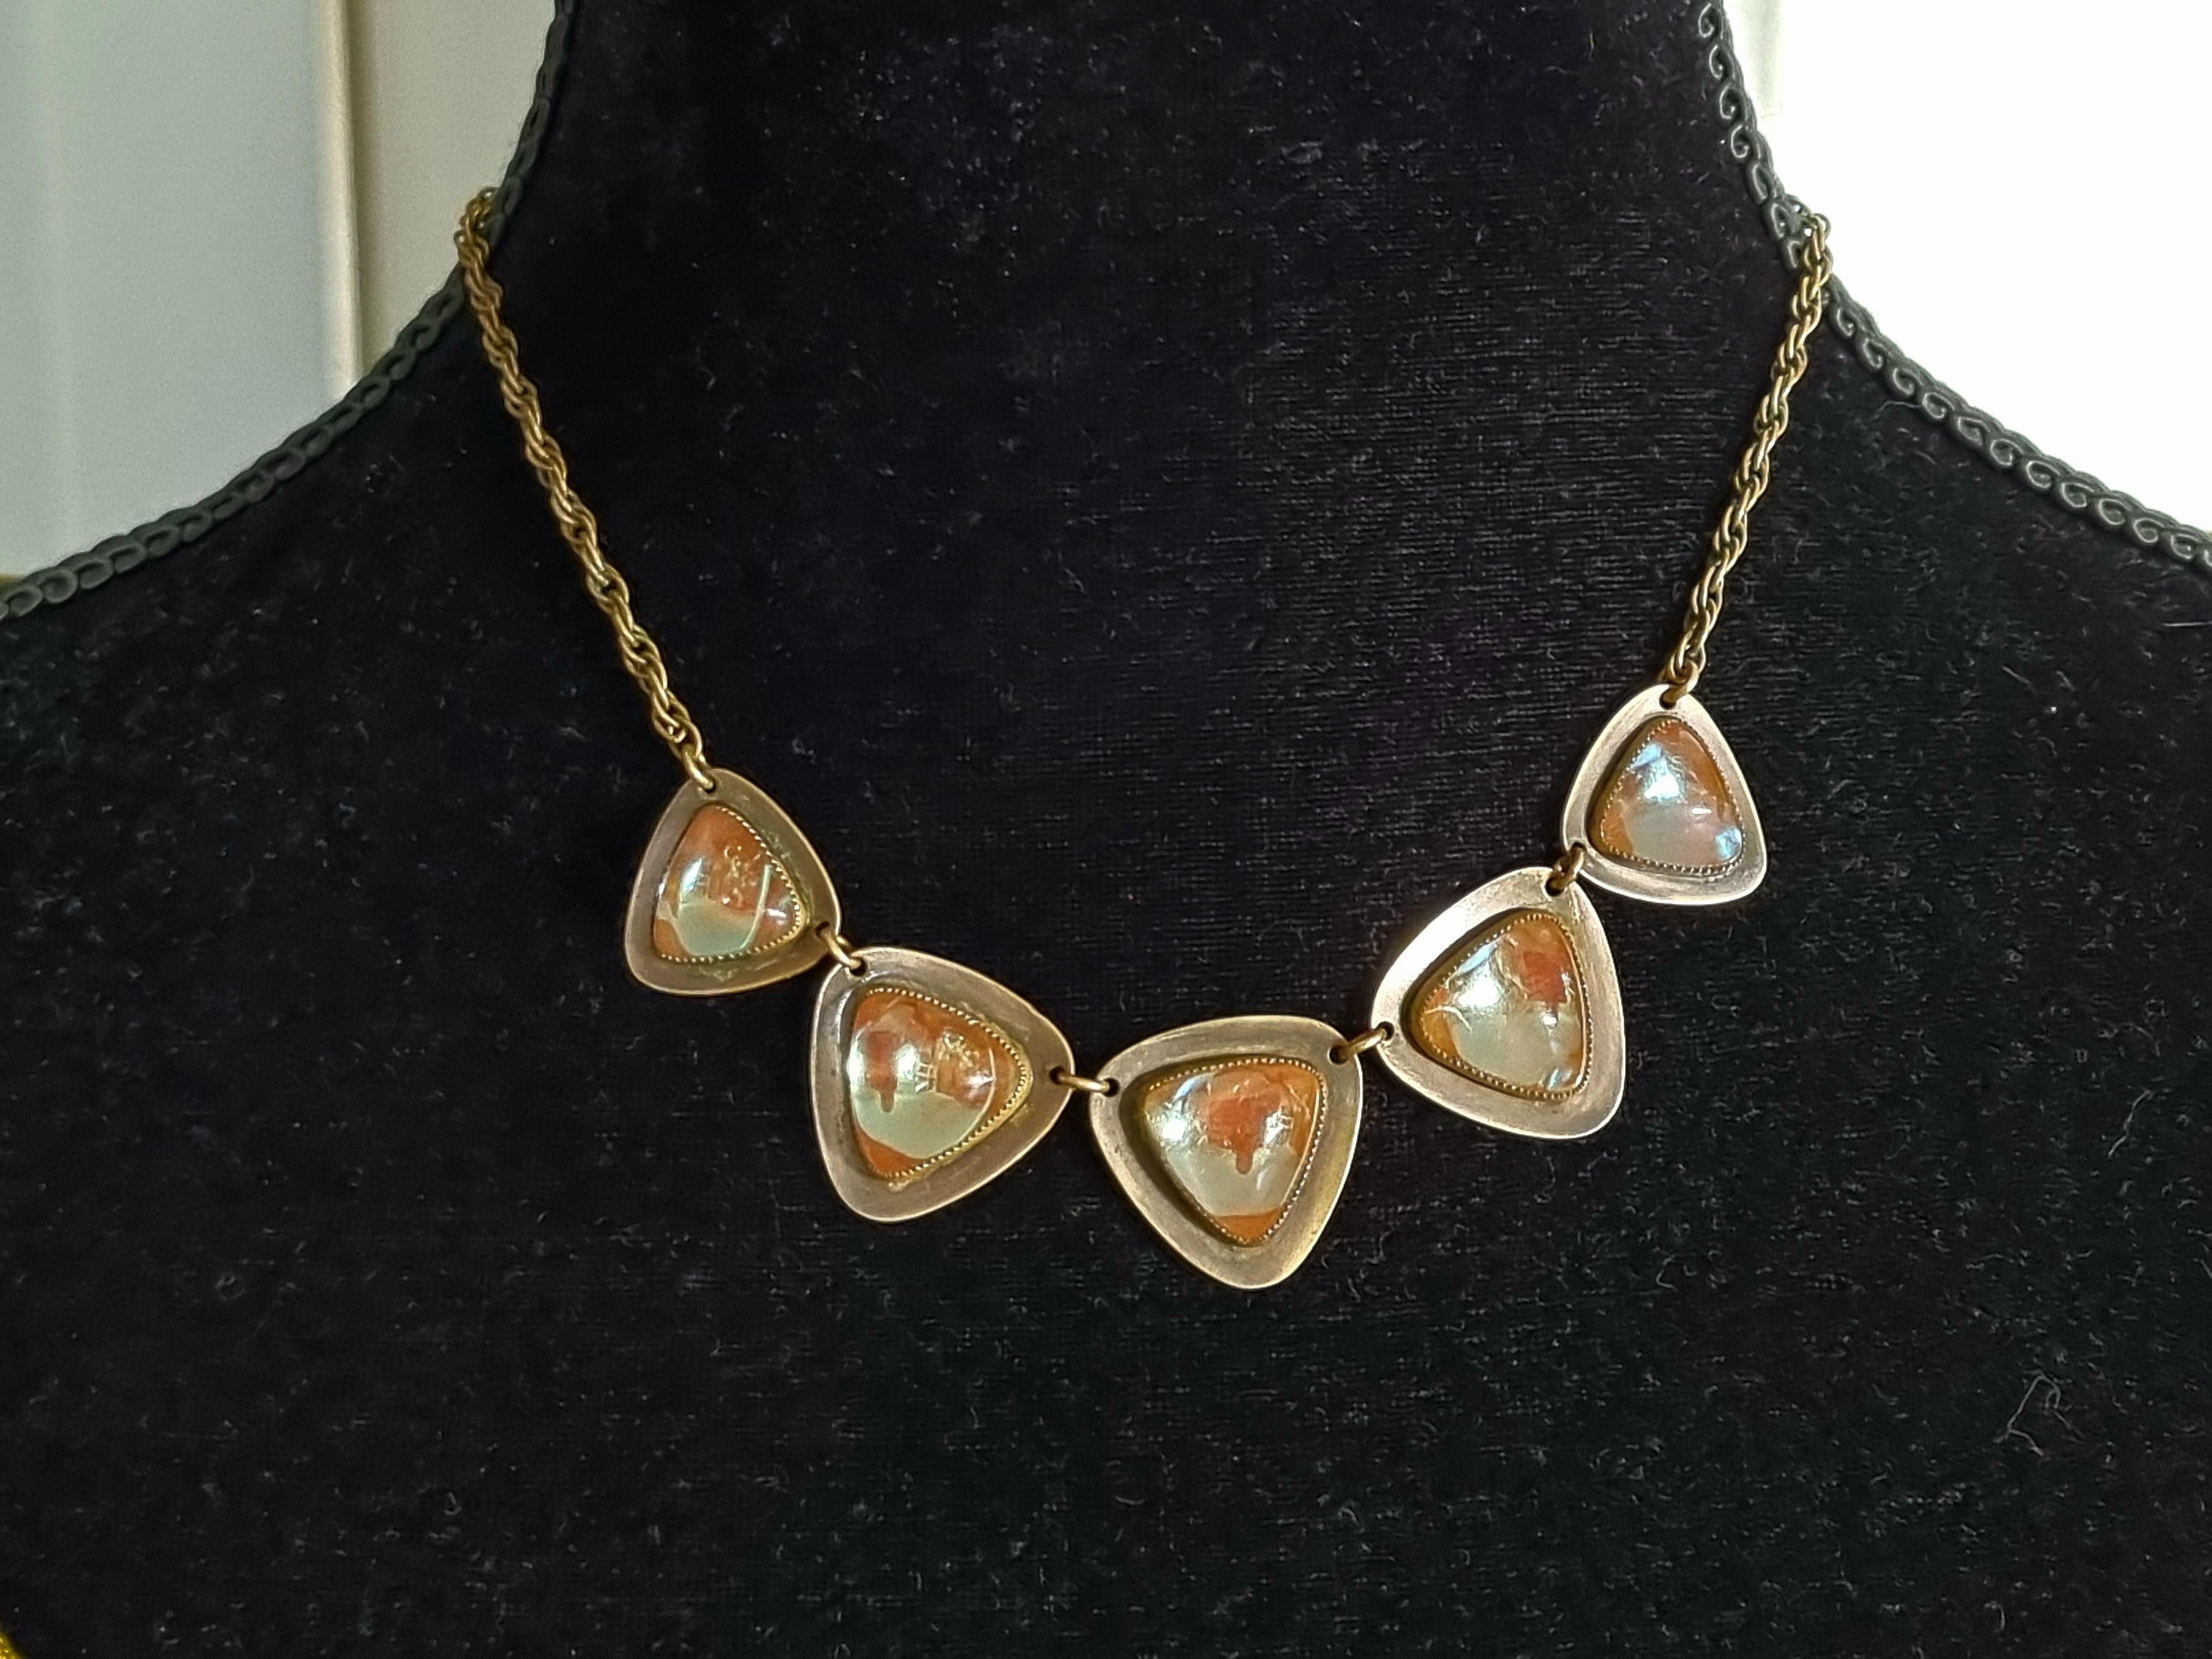 SAPHIRET, ART NOUVEAU necklace, vintage 1920s For Sale 2